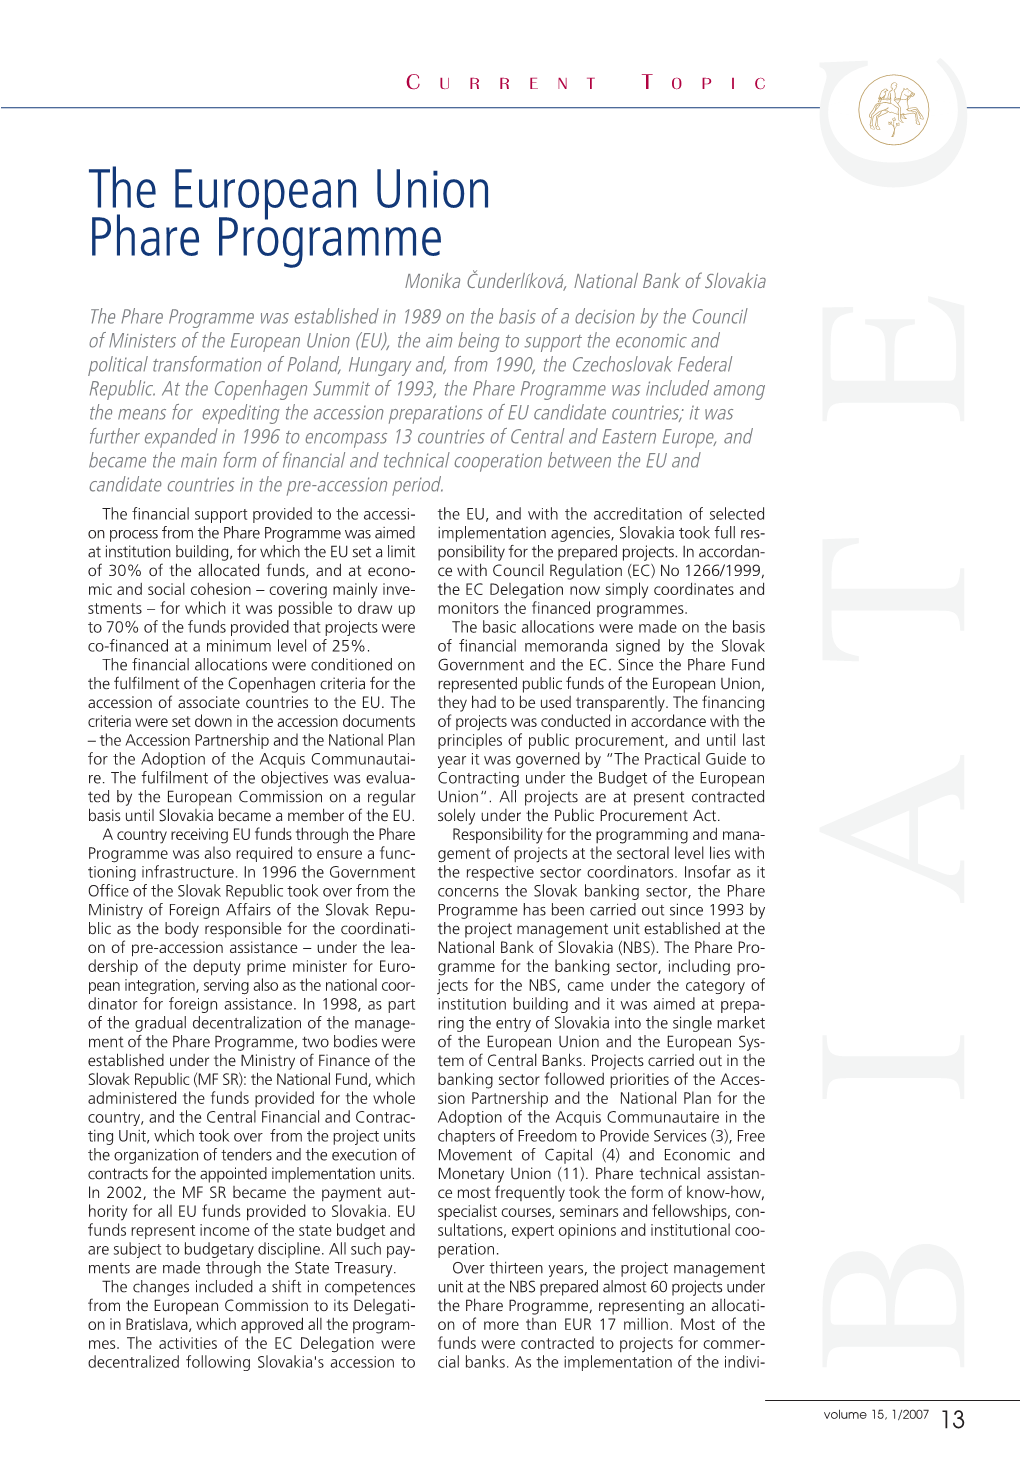 The European Union Phare Programme